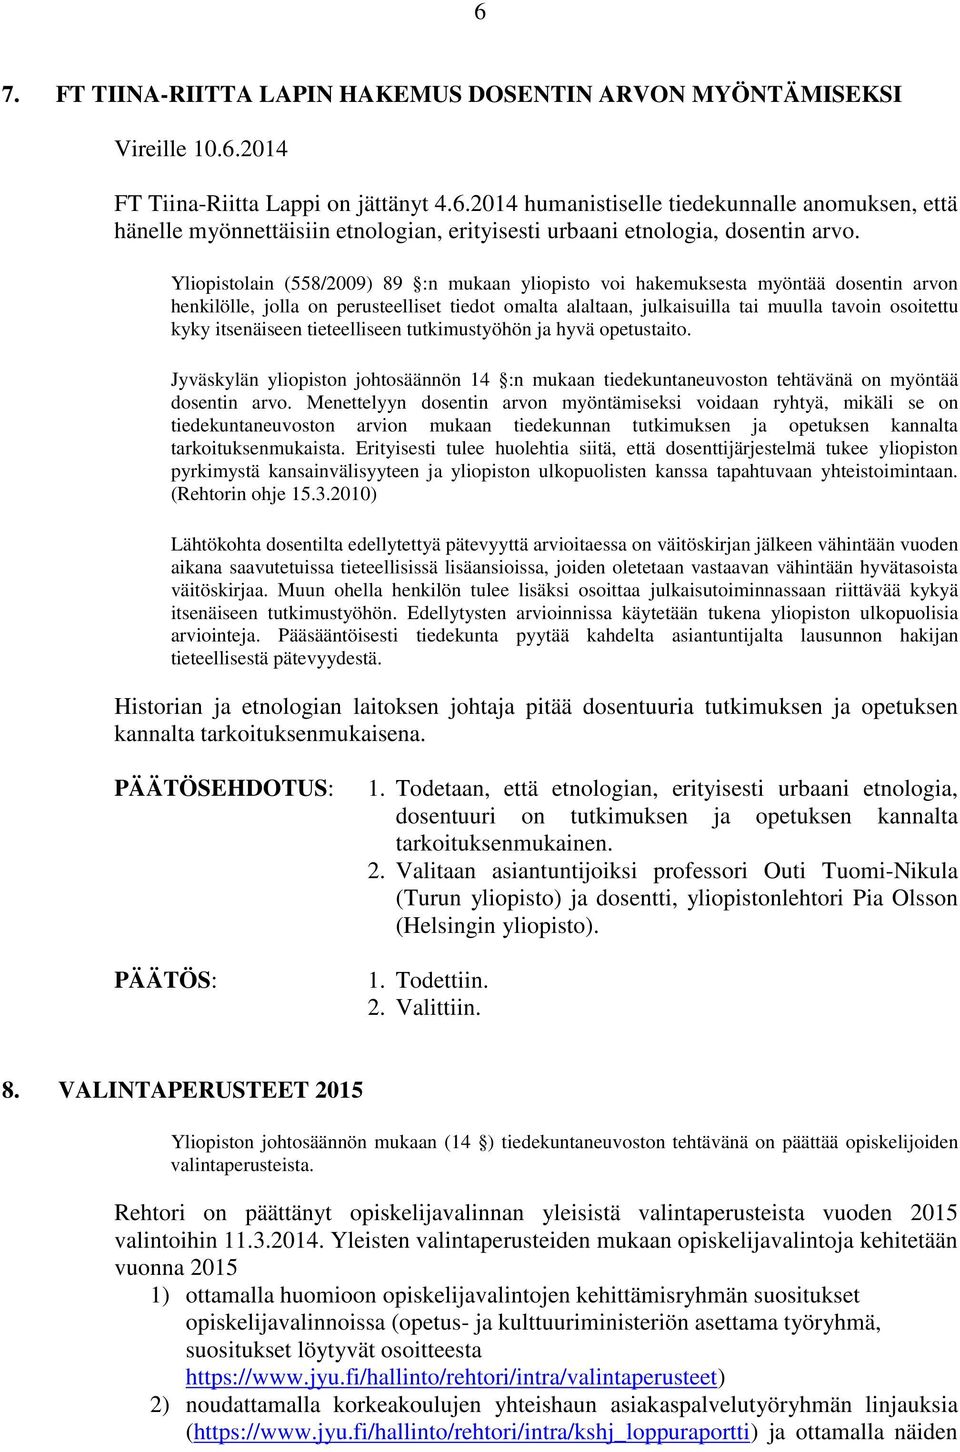 itsenäiseen tieteelliseen tutkimustyöhön ja hyvä opetustaito. Jyväskylän yliopiston johtosäännön 14 :n mukaan tiedekuntaneuvoston tehtävänä on myöntää dosentin arvo.